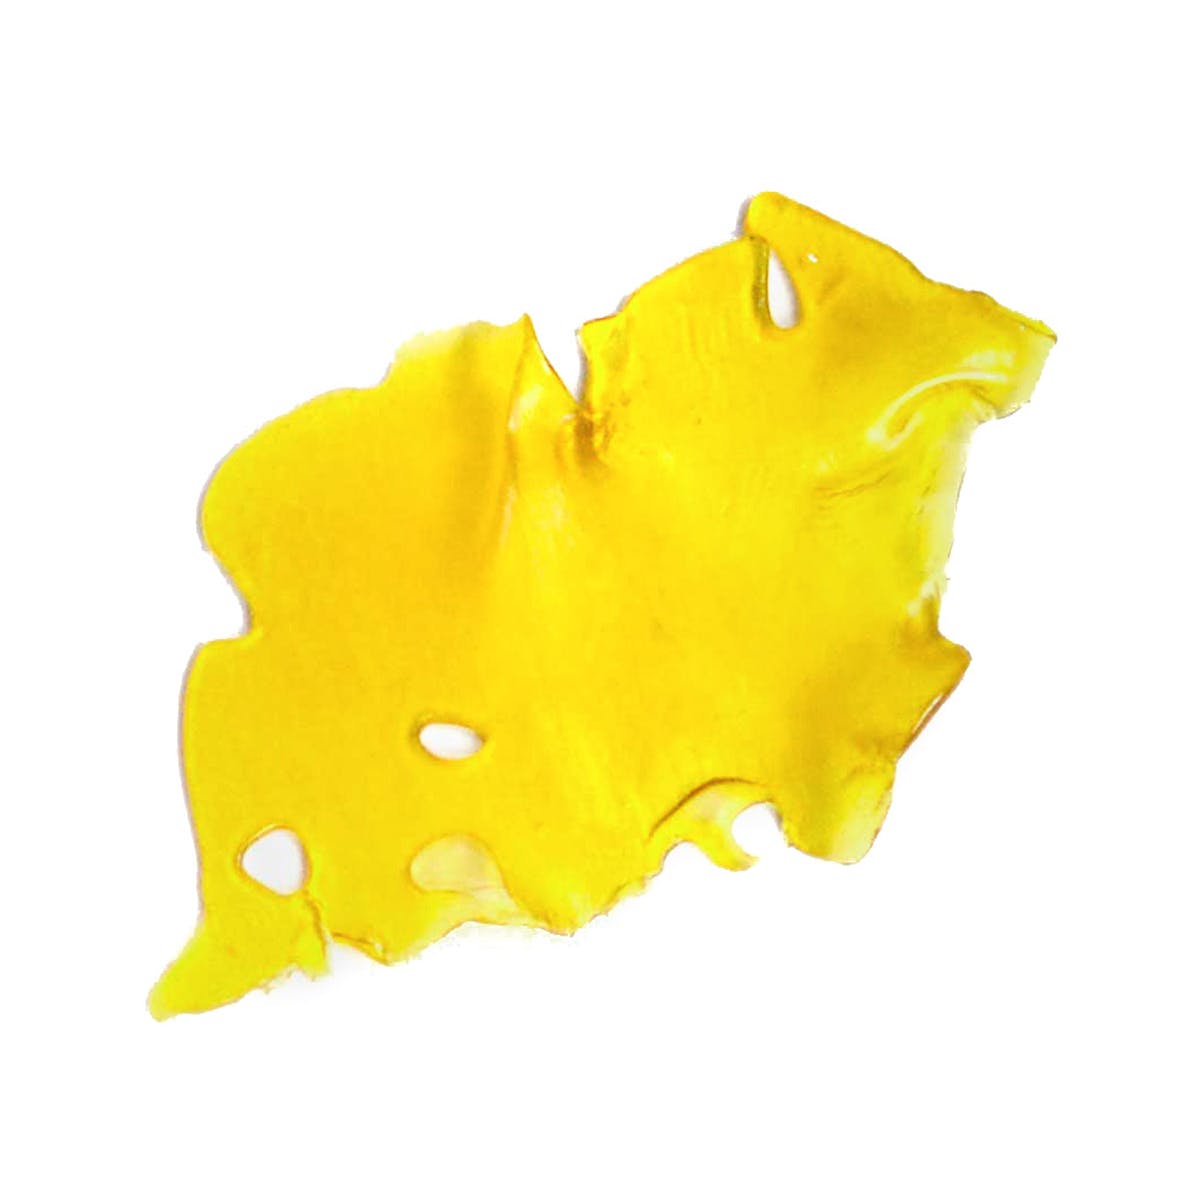 marijuana-dispensaries-gold-20-cap-collective-in-los-angeles-lemon-meringue-shatter